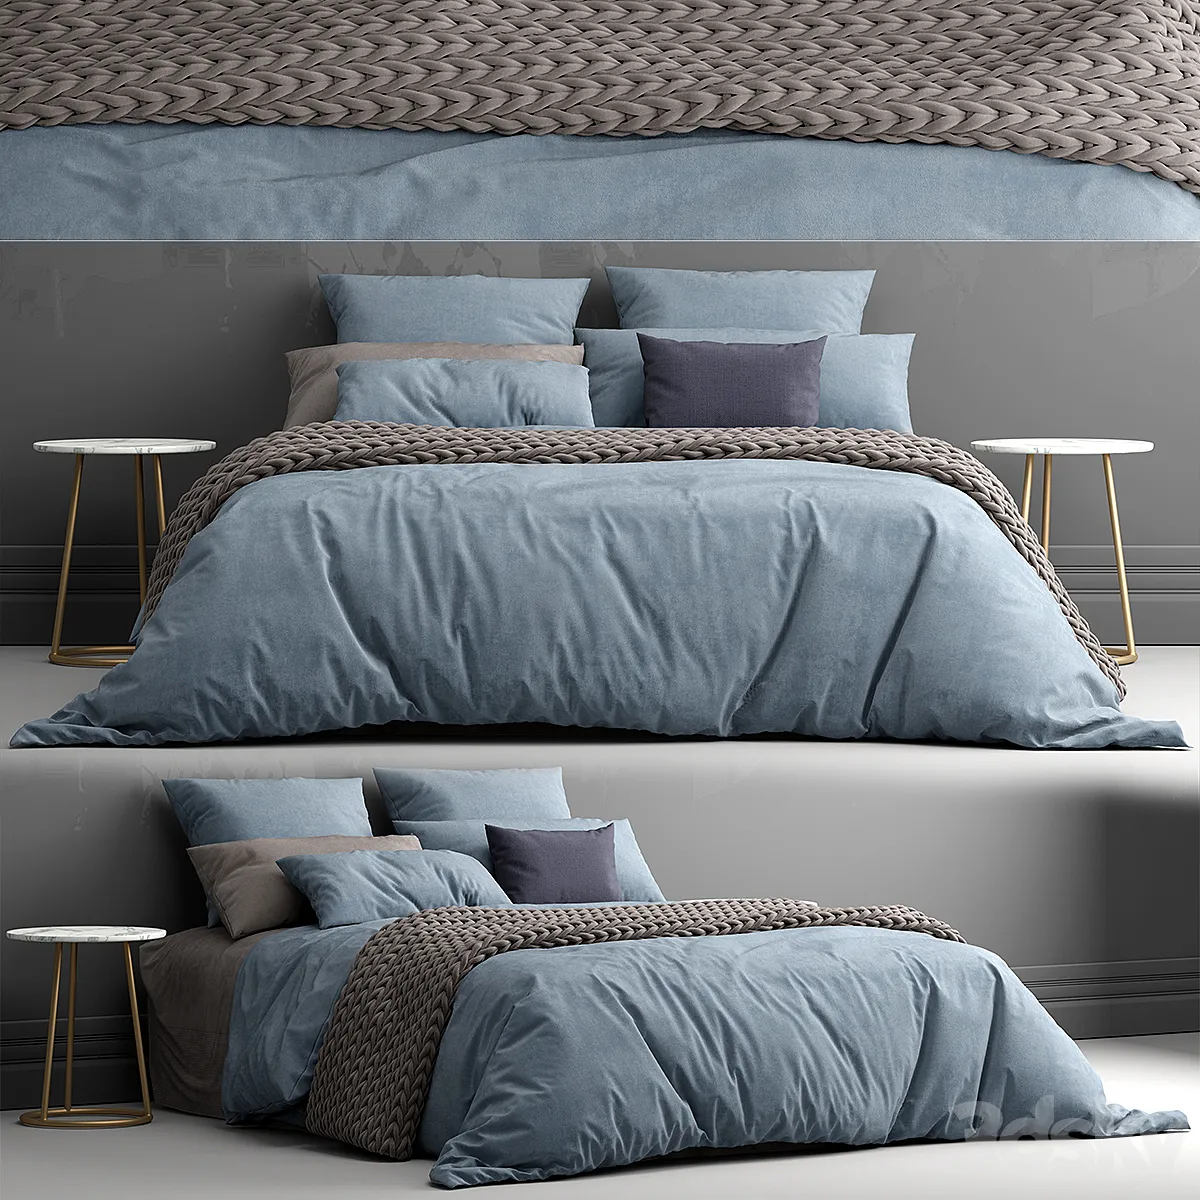 مدل سه بعدی تخت خواب تری دی مکس + ویری Bed from bedding adairs australia